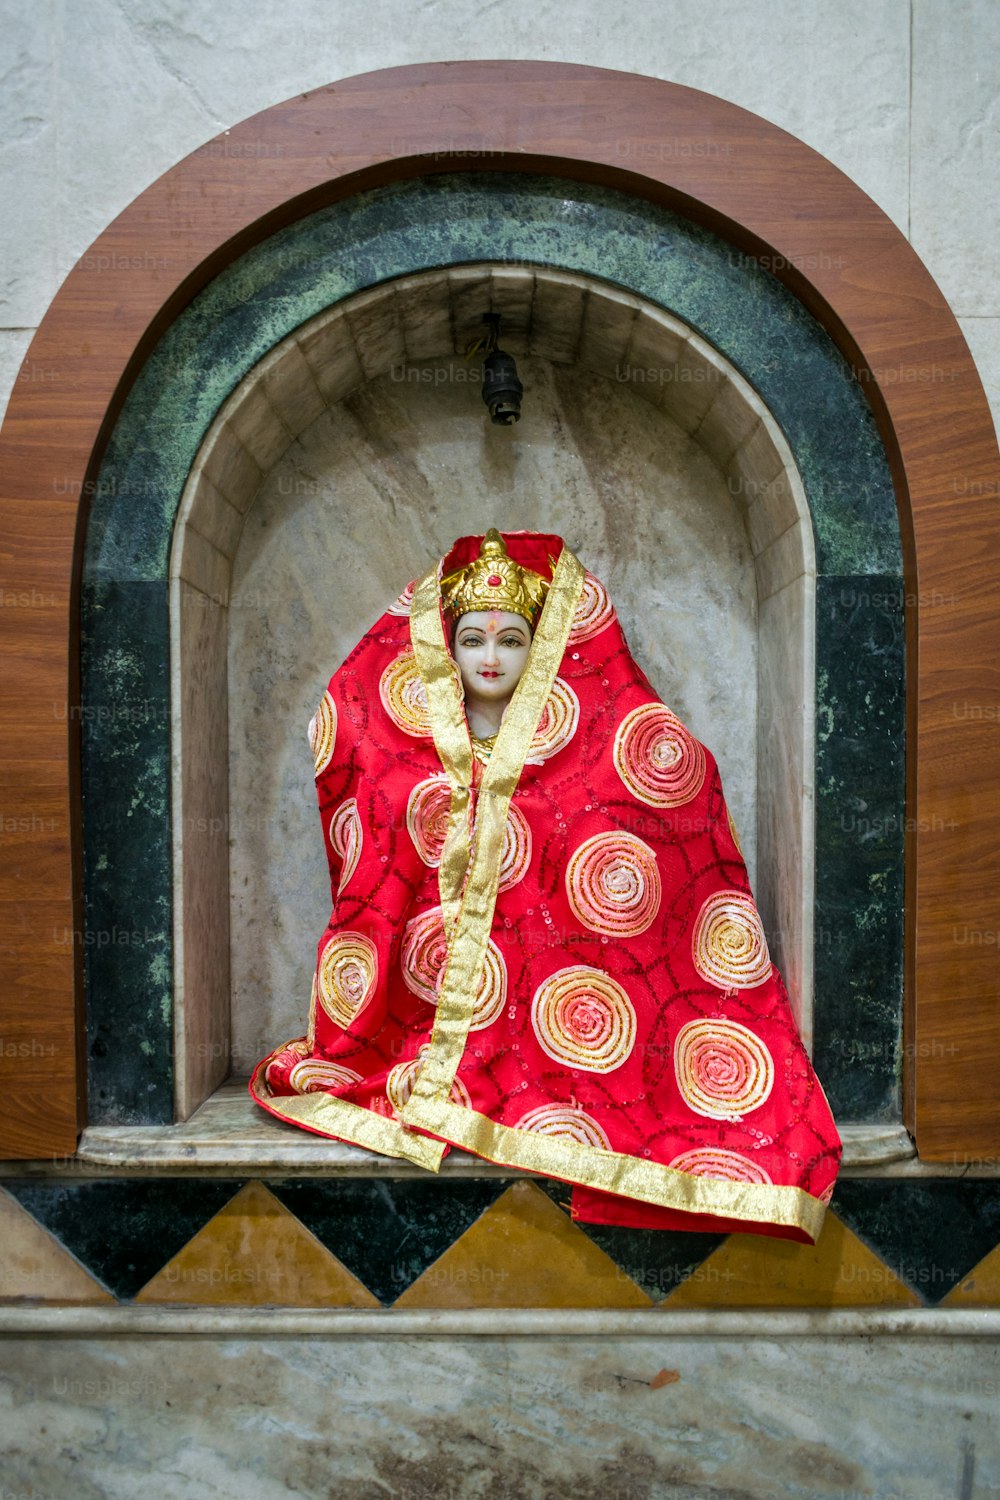 eine Statue einer Frau in einem rot-goldenen Kostüm